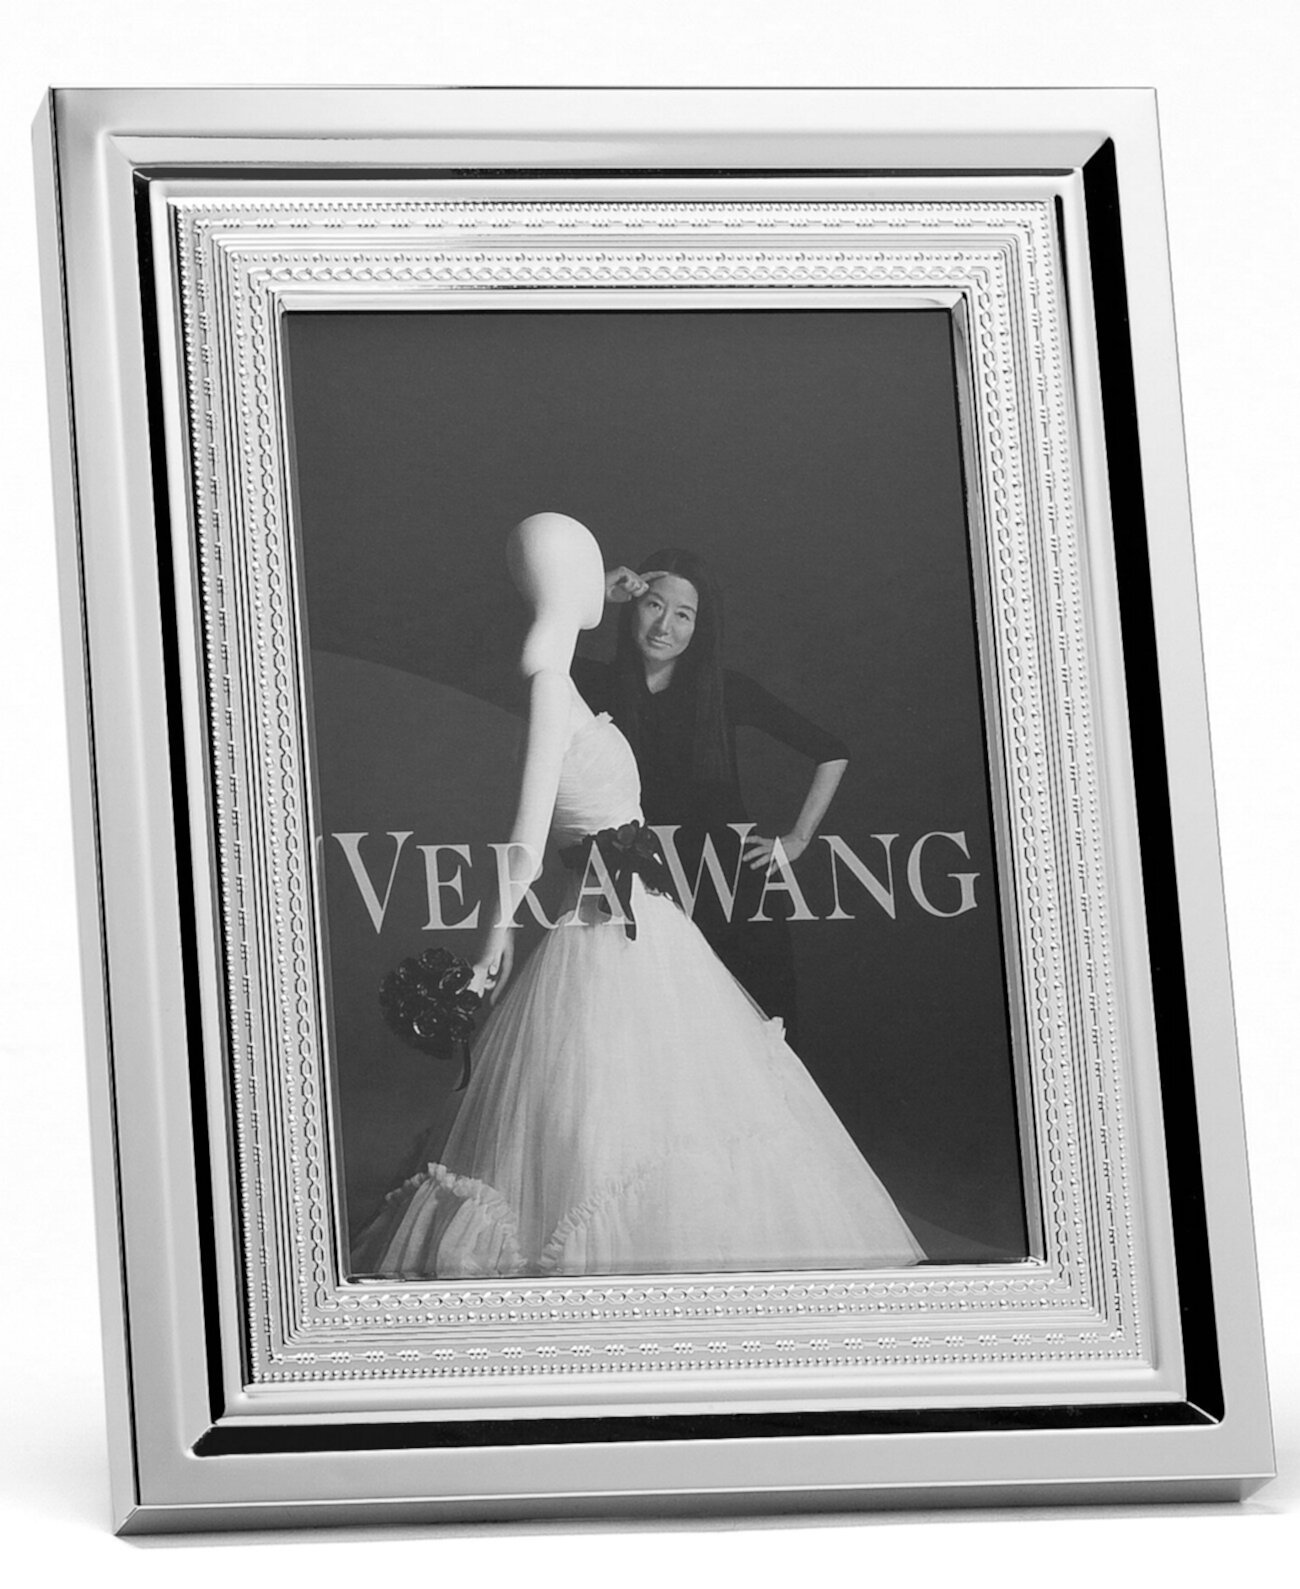 Рамка для фотографий с любовью размером 4 x 6 дюймов Vera Wang Wedgwood